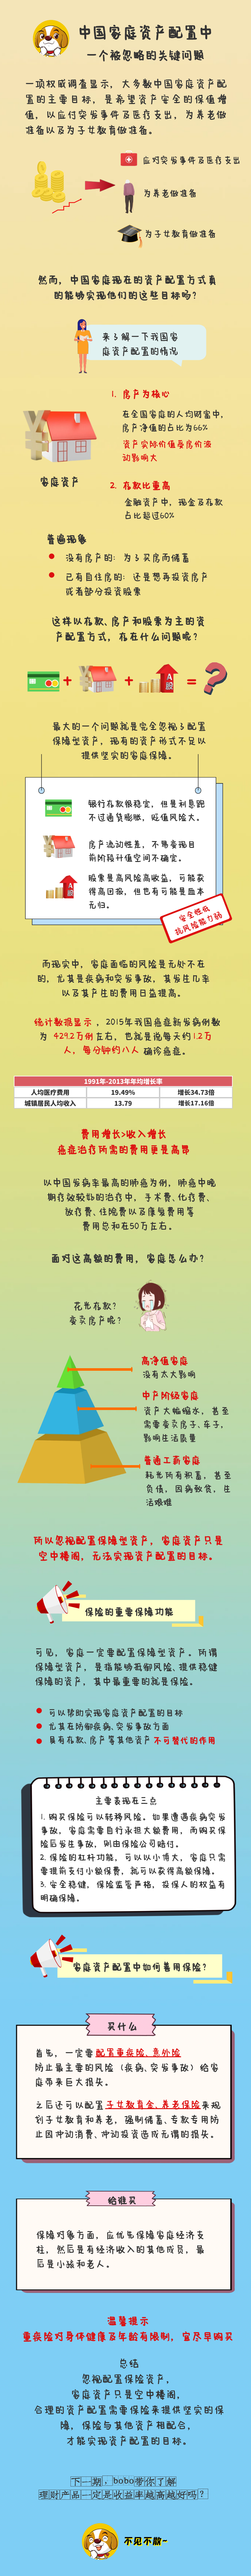 5【保险·课堂】中国家庭资产配置中一个被忽略的关键问题.png